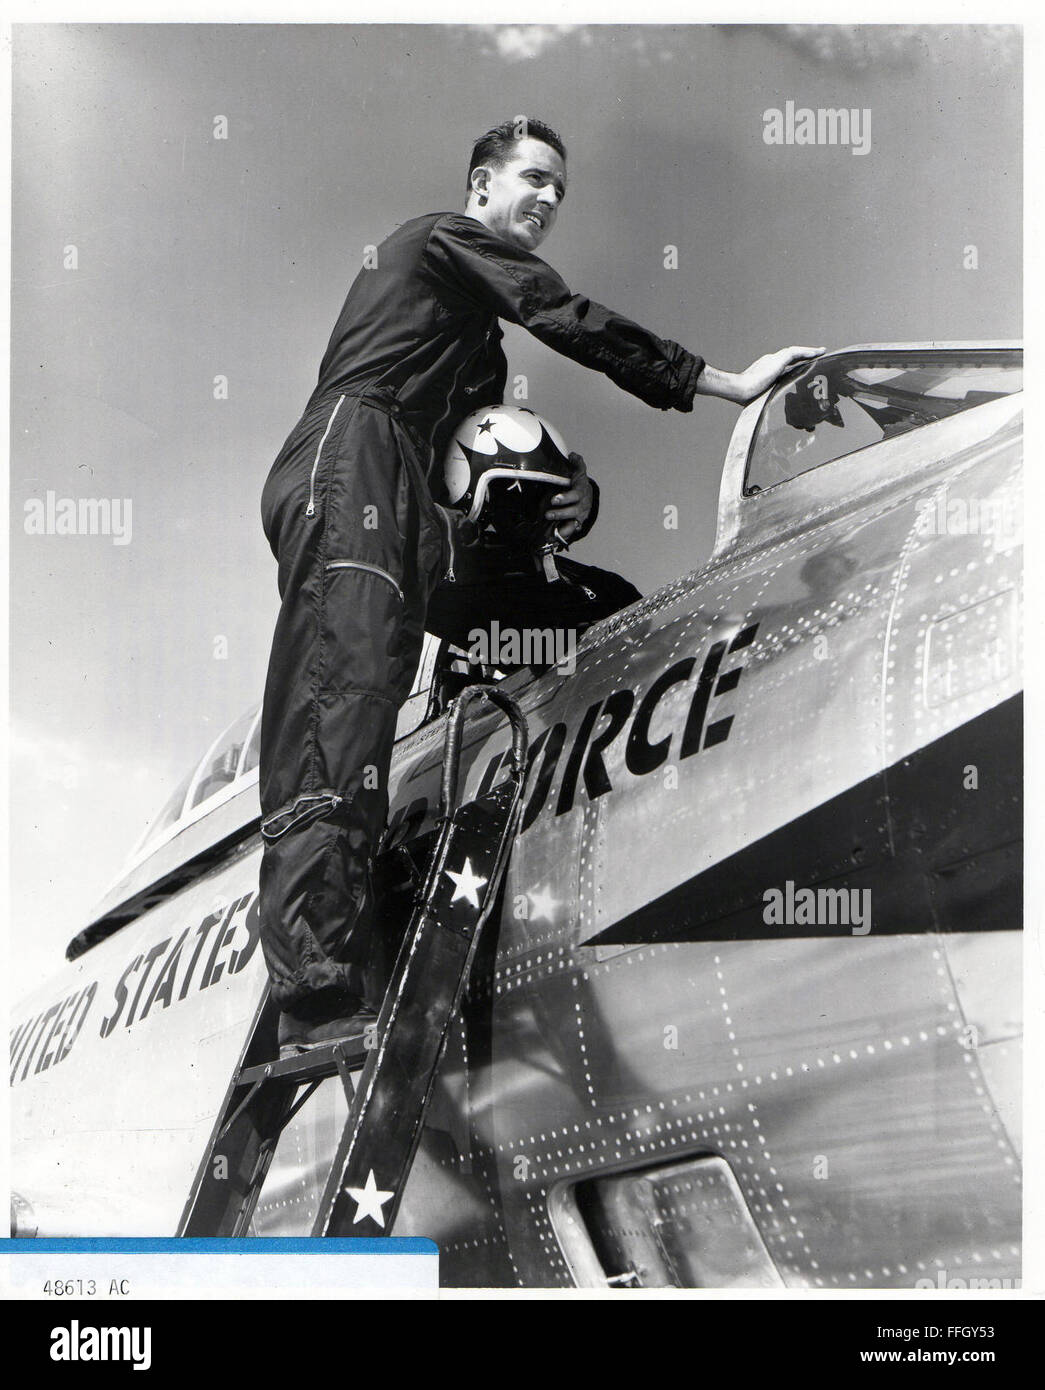 Il cap. C.A. Pattilo, membro della "Thunderbirds' sale nella sua F-84 in preparazione per il decollo da Luke Air Force Base, Ariz. il 13 giugno 1953. "Thunderbirds' sono unici aria team di dimostrazione, che consiste di fo un quartetto di volantini che hanno messo il loro repubblica Thunderjets attraverso intricate manovre dimostra efficace livello di abilità raggiunto dalla Air Force piloti nella formazione di volo. Foto Stock